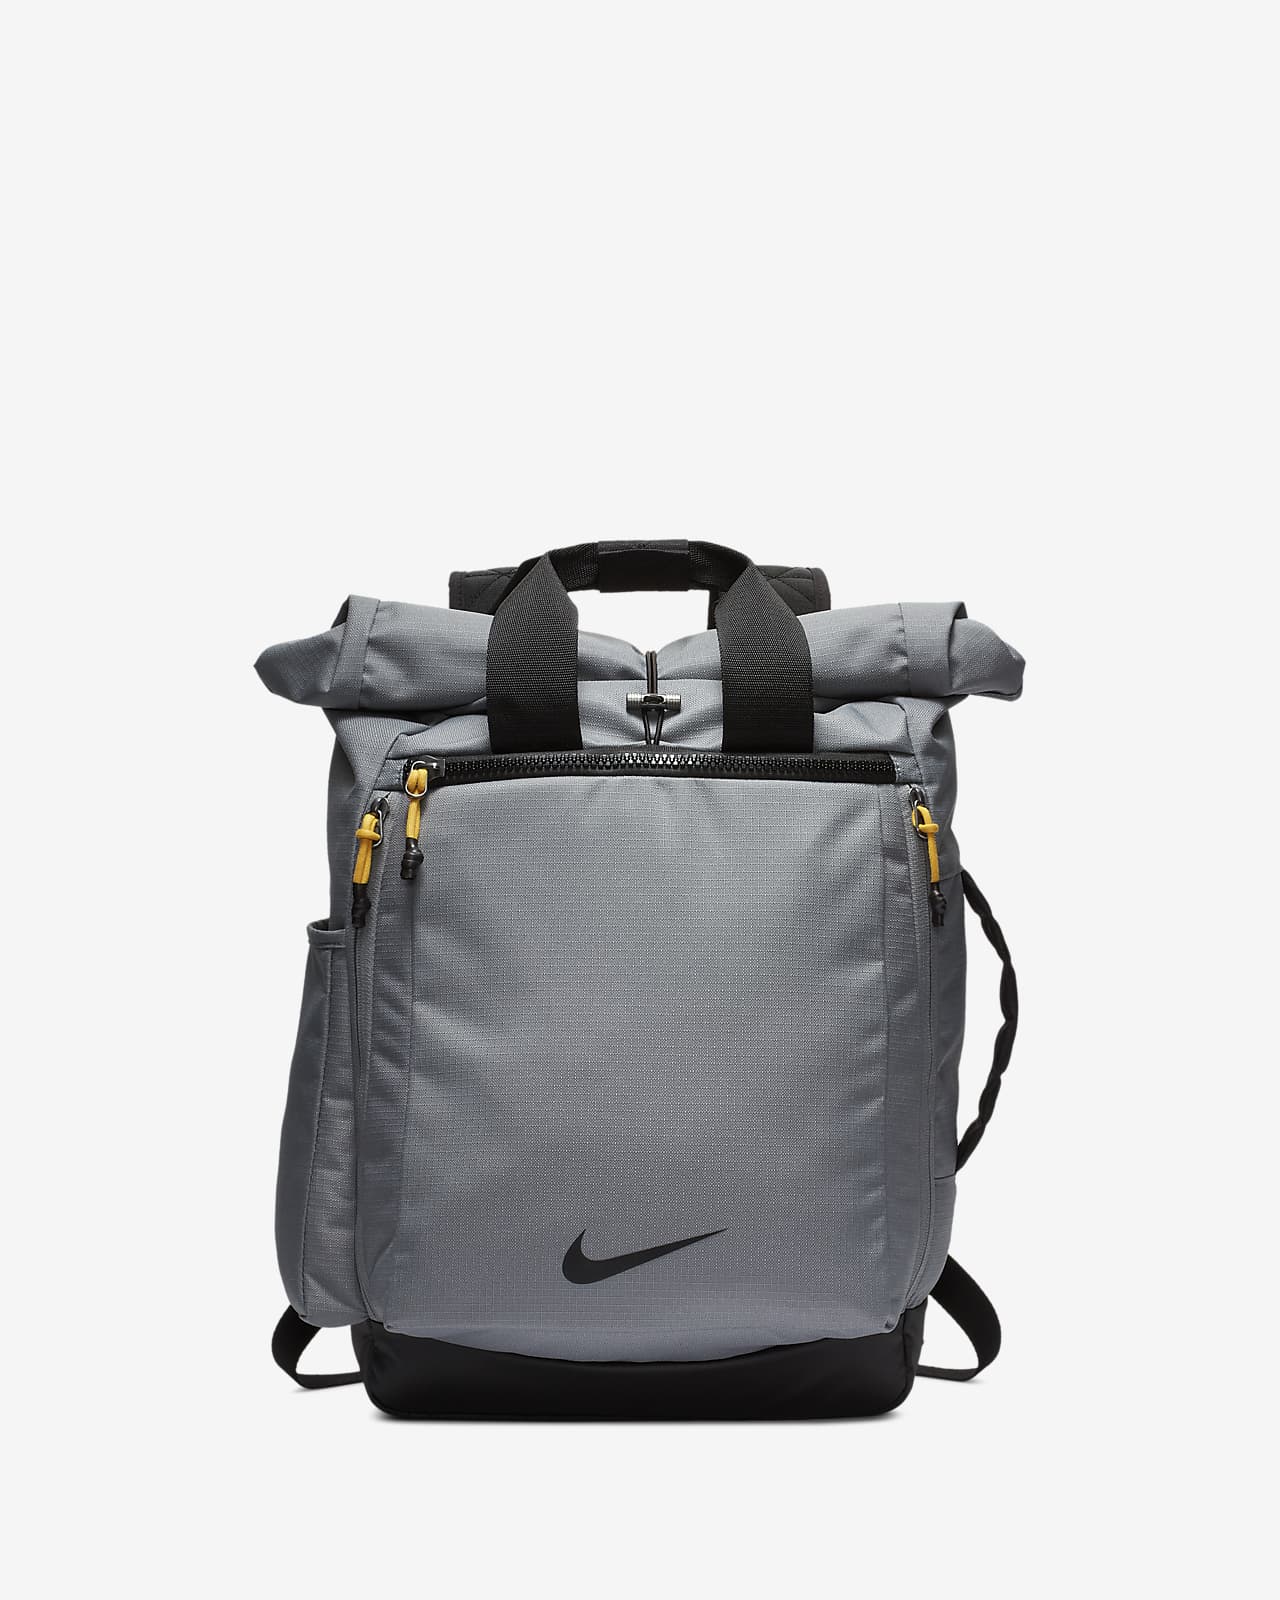 grey and black nike backpack